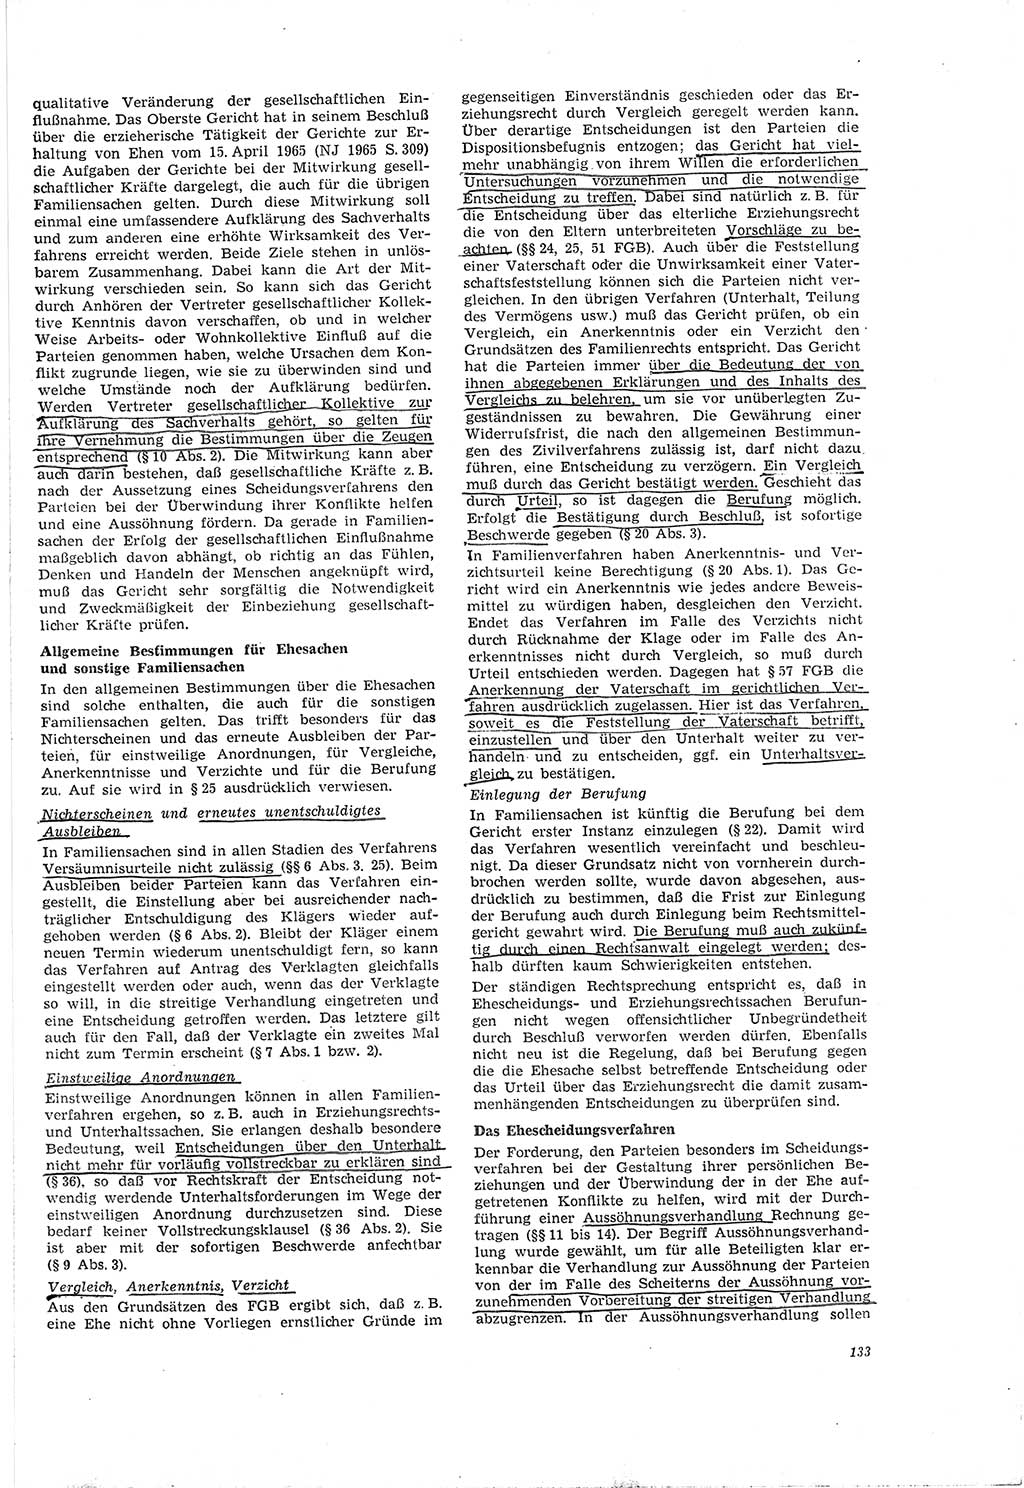 Neue Justiz (NJ), Zeitschrift für Recht und Rechtswissenschaft [Deutsche Demokratische Republik (DDR)], 20. Jahrgang 1966, Seite 133 (NJ DDR 1966, S. 133)